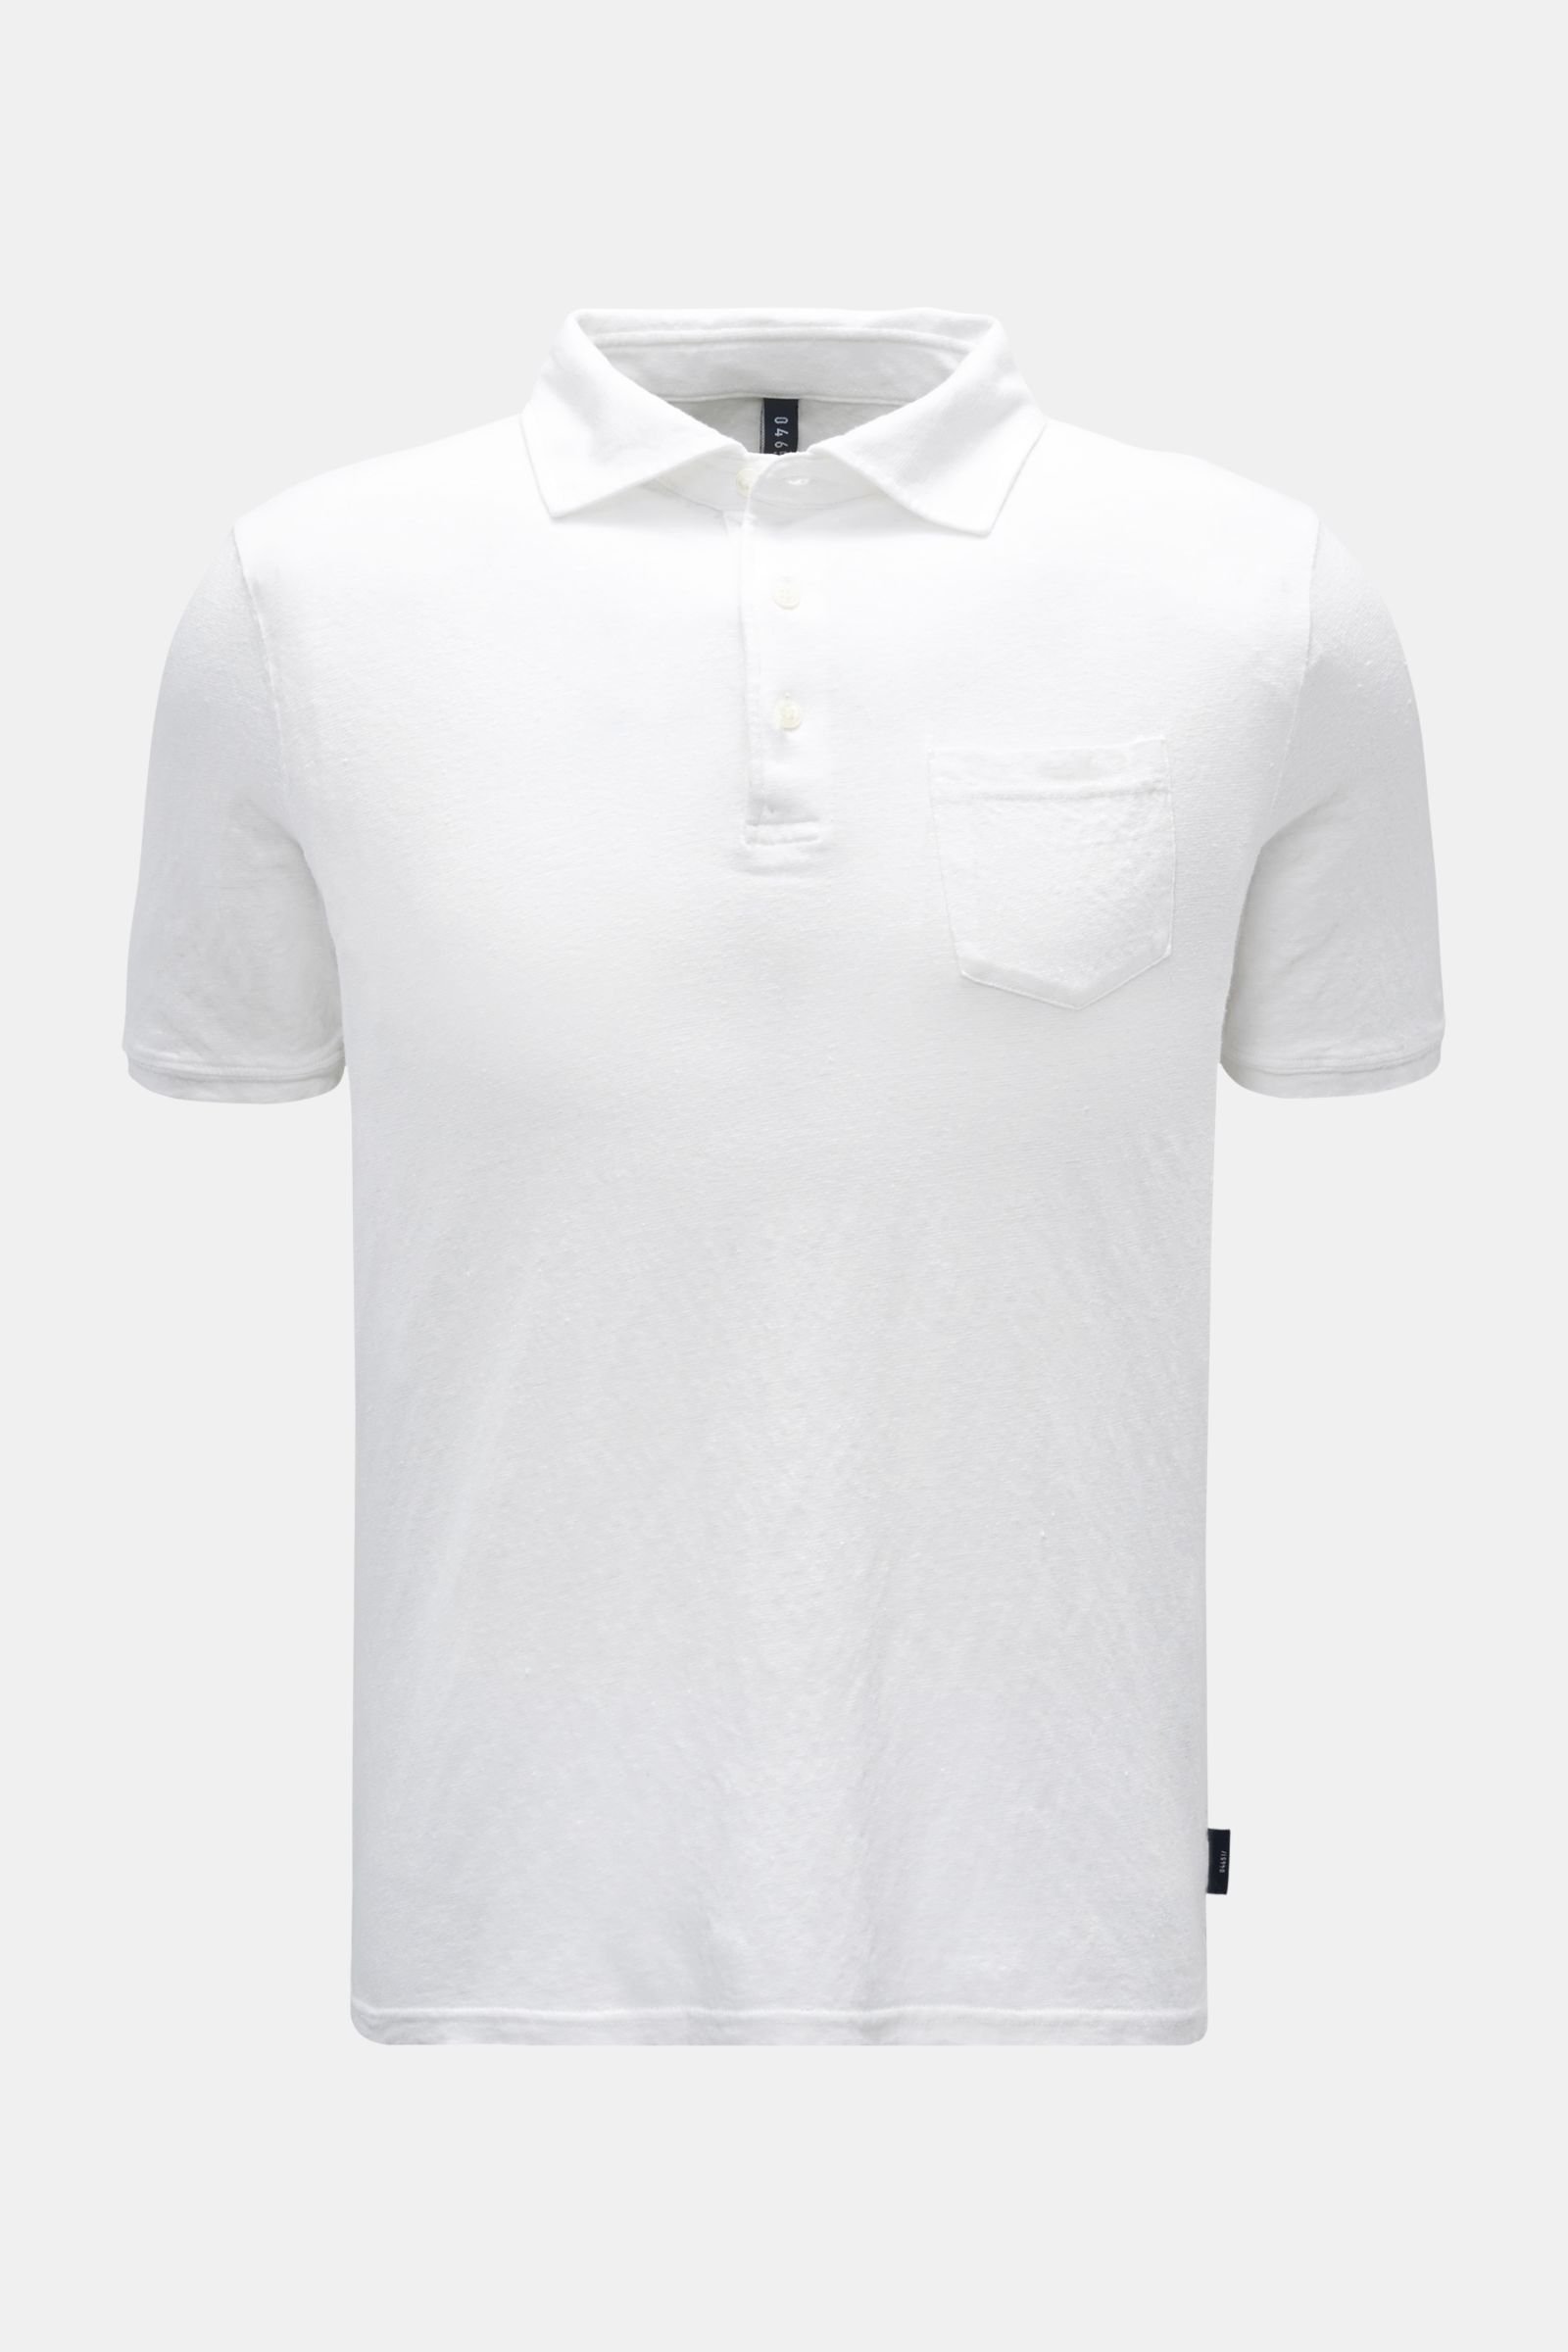 Linen polo shirt white